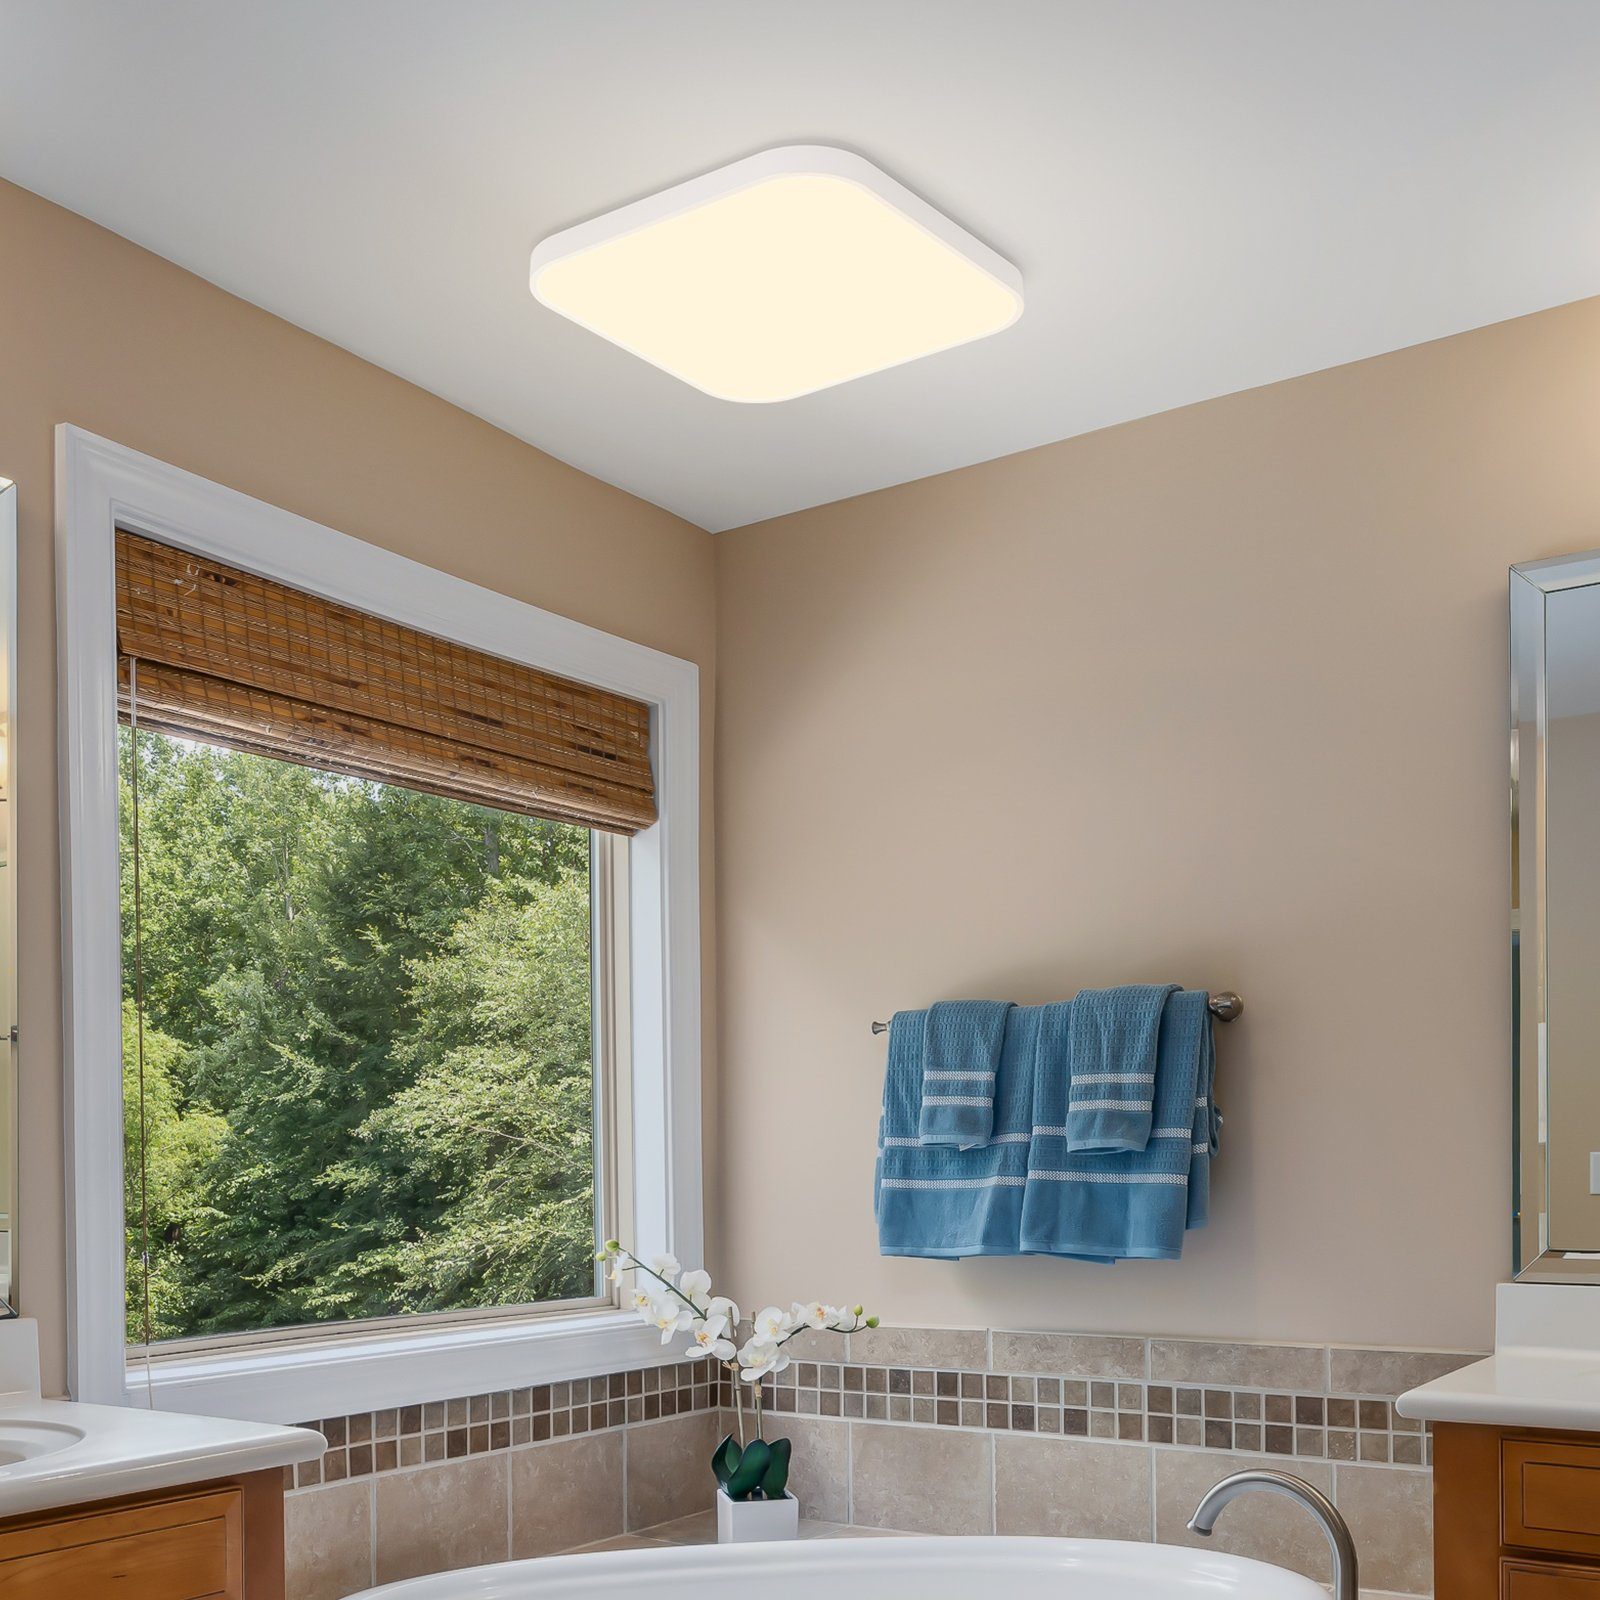 Nettlife LED Deckenleuchte Panel Decklampe 19W Quadrat 27cm Küche LED Schlafzimmer IP44, für wasserdicht, integriert, Flach fest Weiß Wohnzimmer Warmweiß